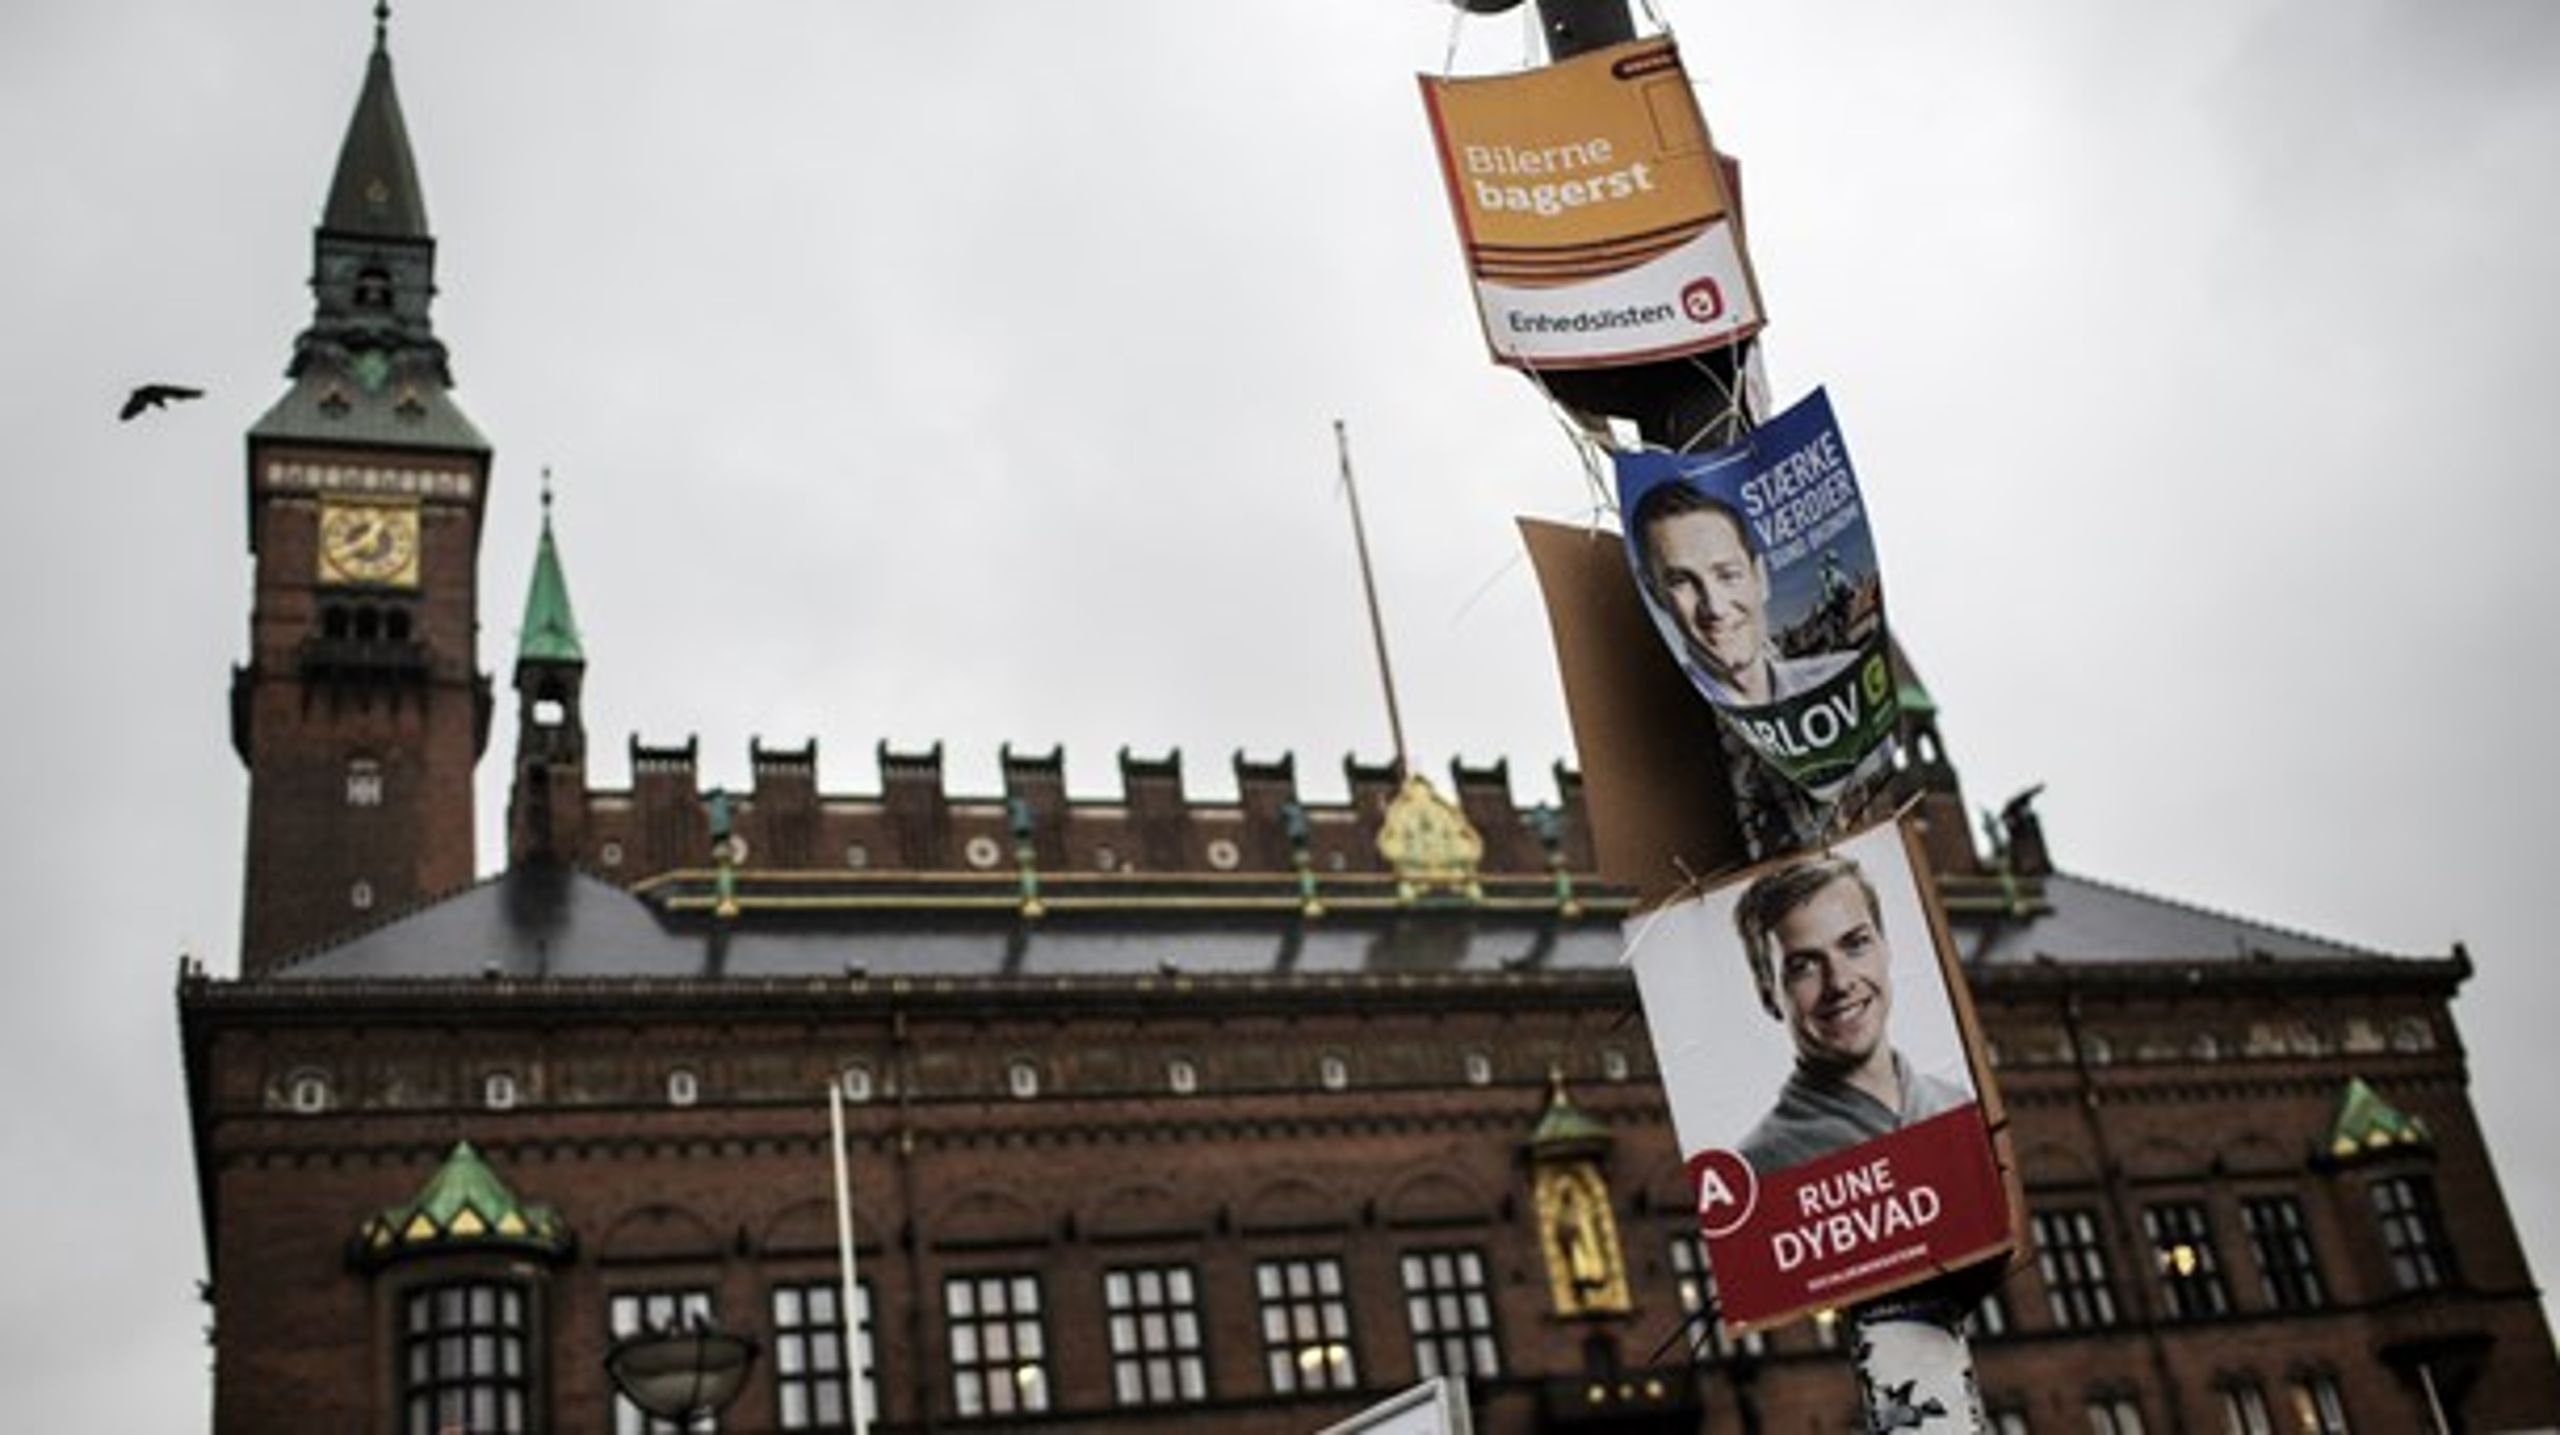 "Langt ude og fuldstændig uacceptabelt," siger en Venstre-kandidat om planer om "valgtæsk" i Ungdomshuset. "En demokratisk berettiget udmelding," siger Enhedslisten.